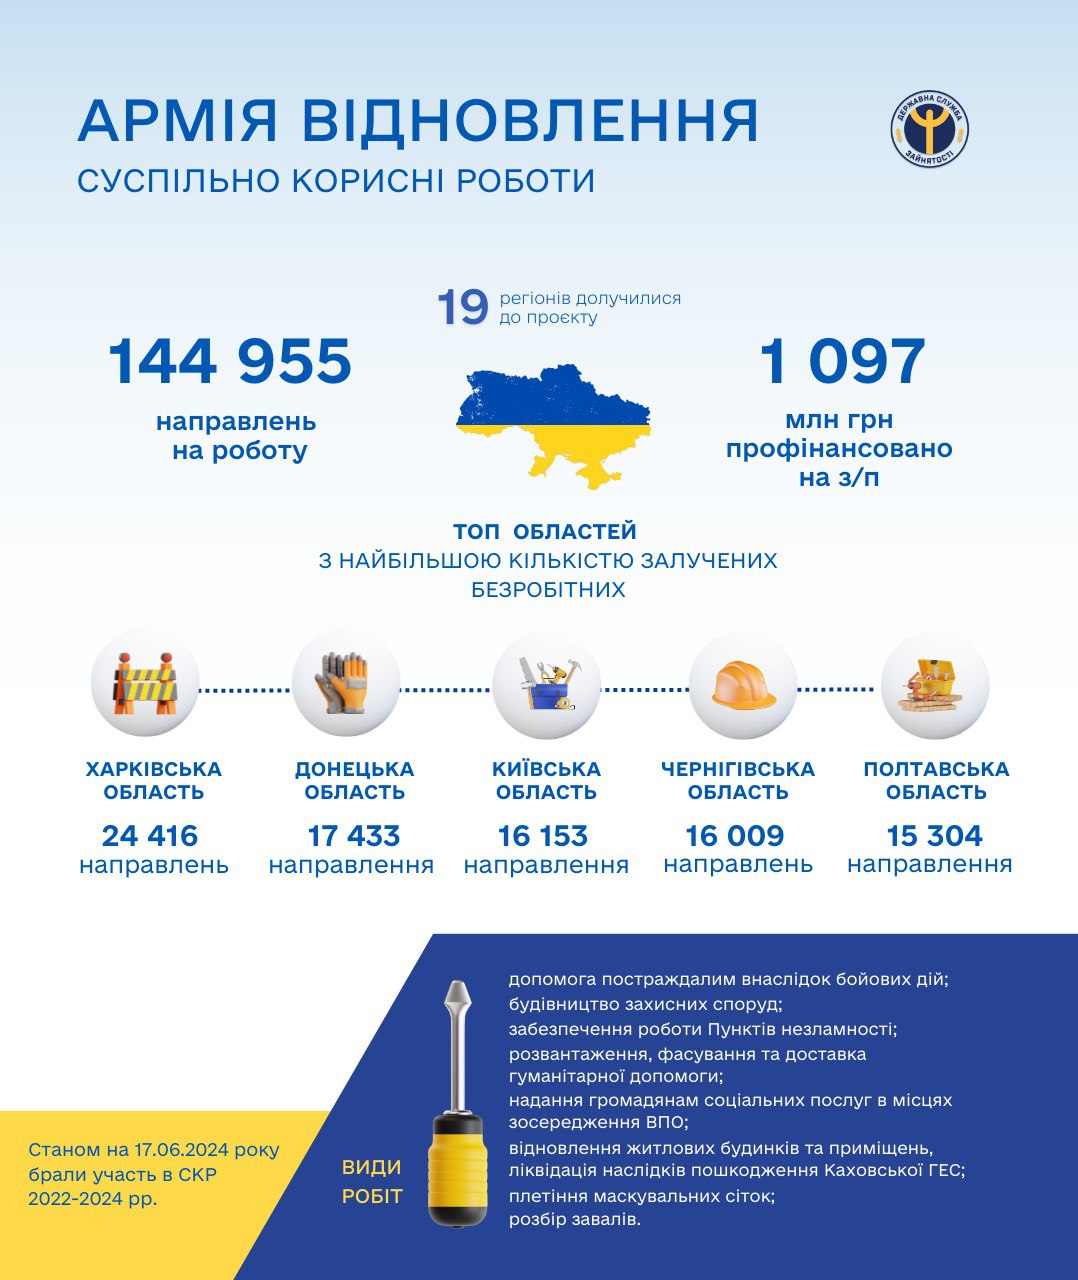 Государство выплатило зарплат уже на 1 млрд грн  безработным из "Армии восстановления"